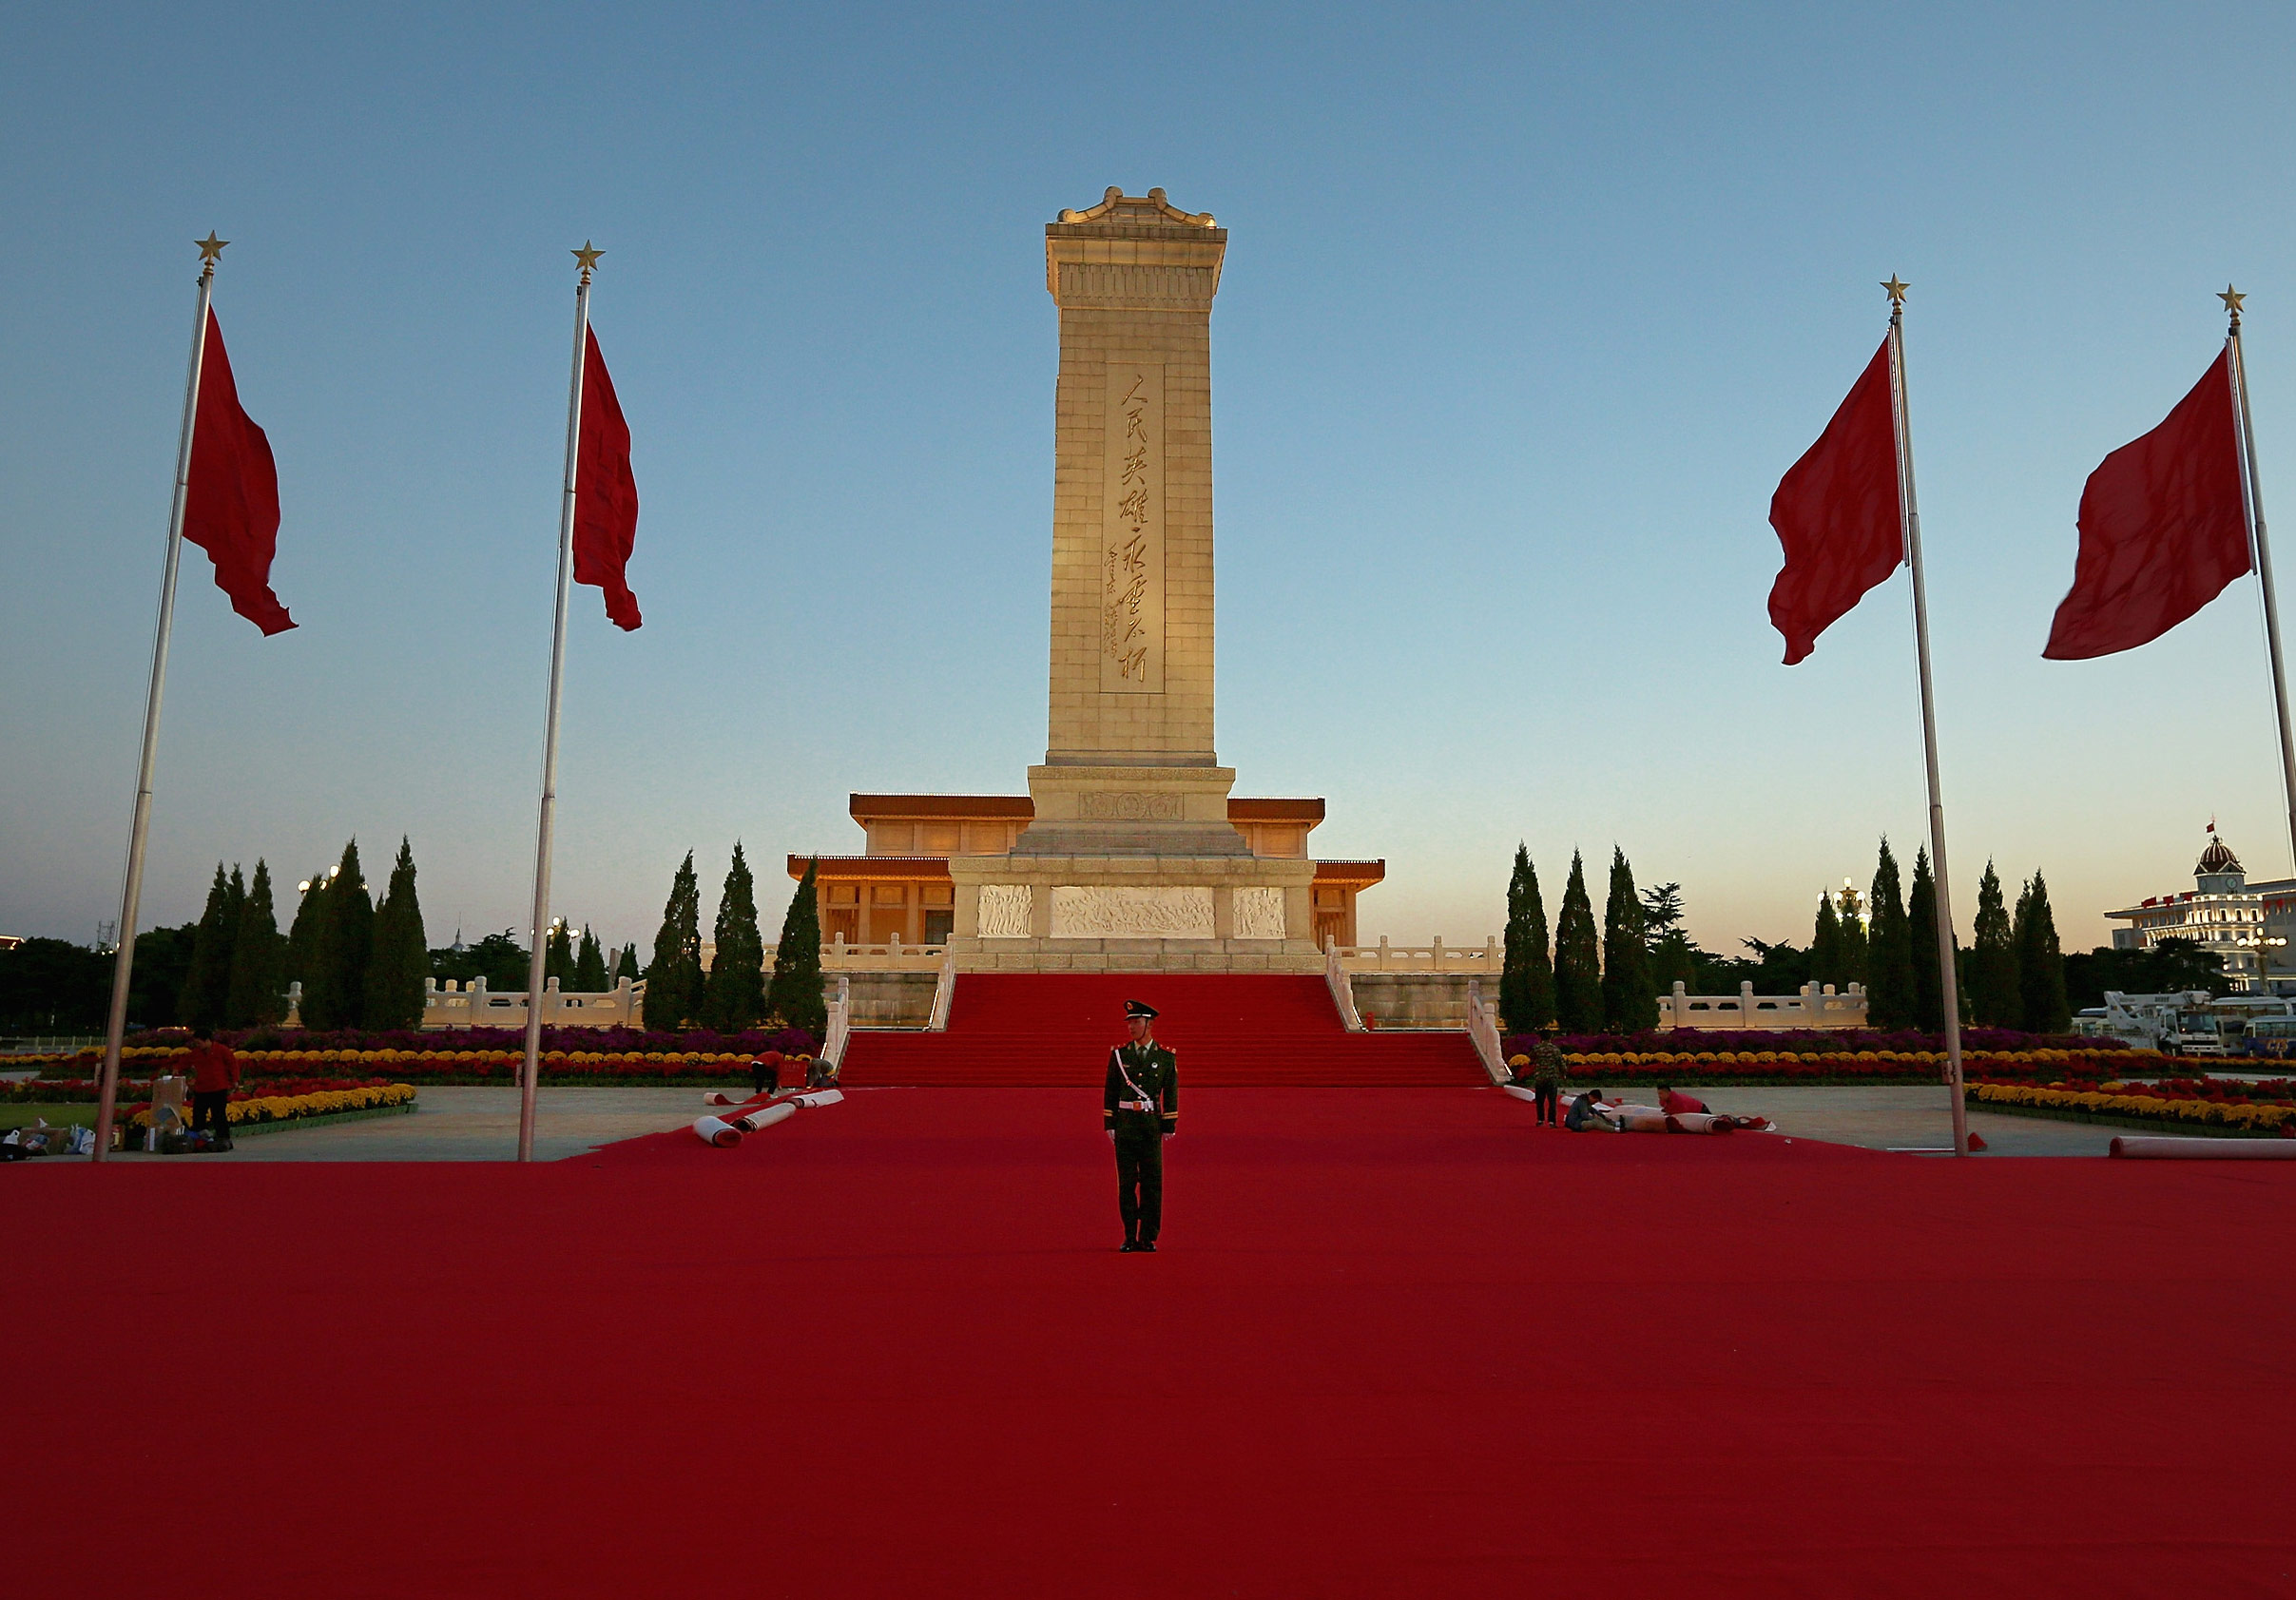 on September 28, 2012 in Beijing, China.
